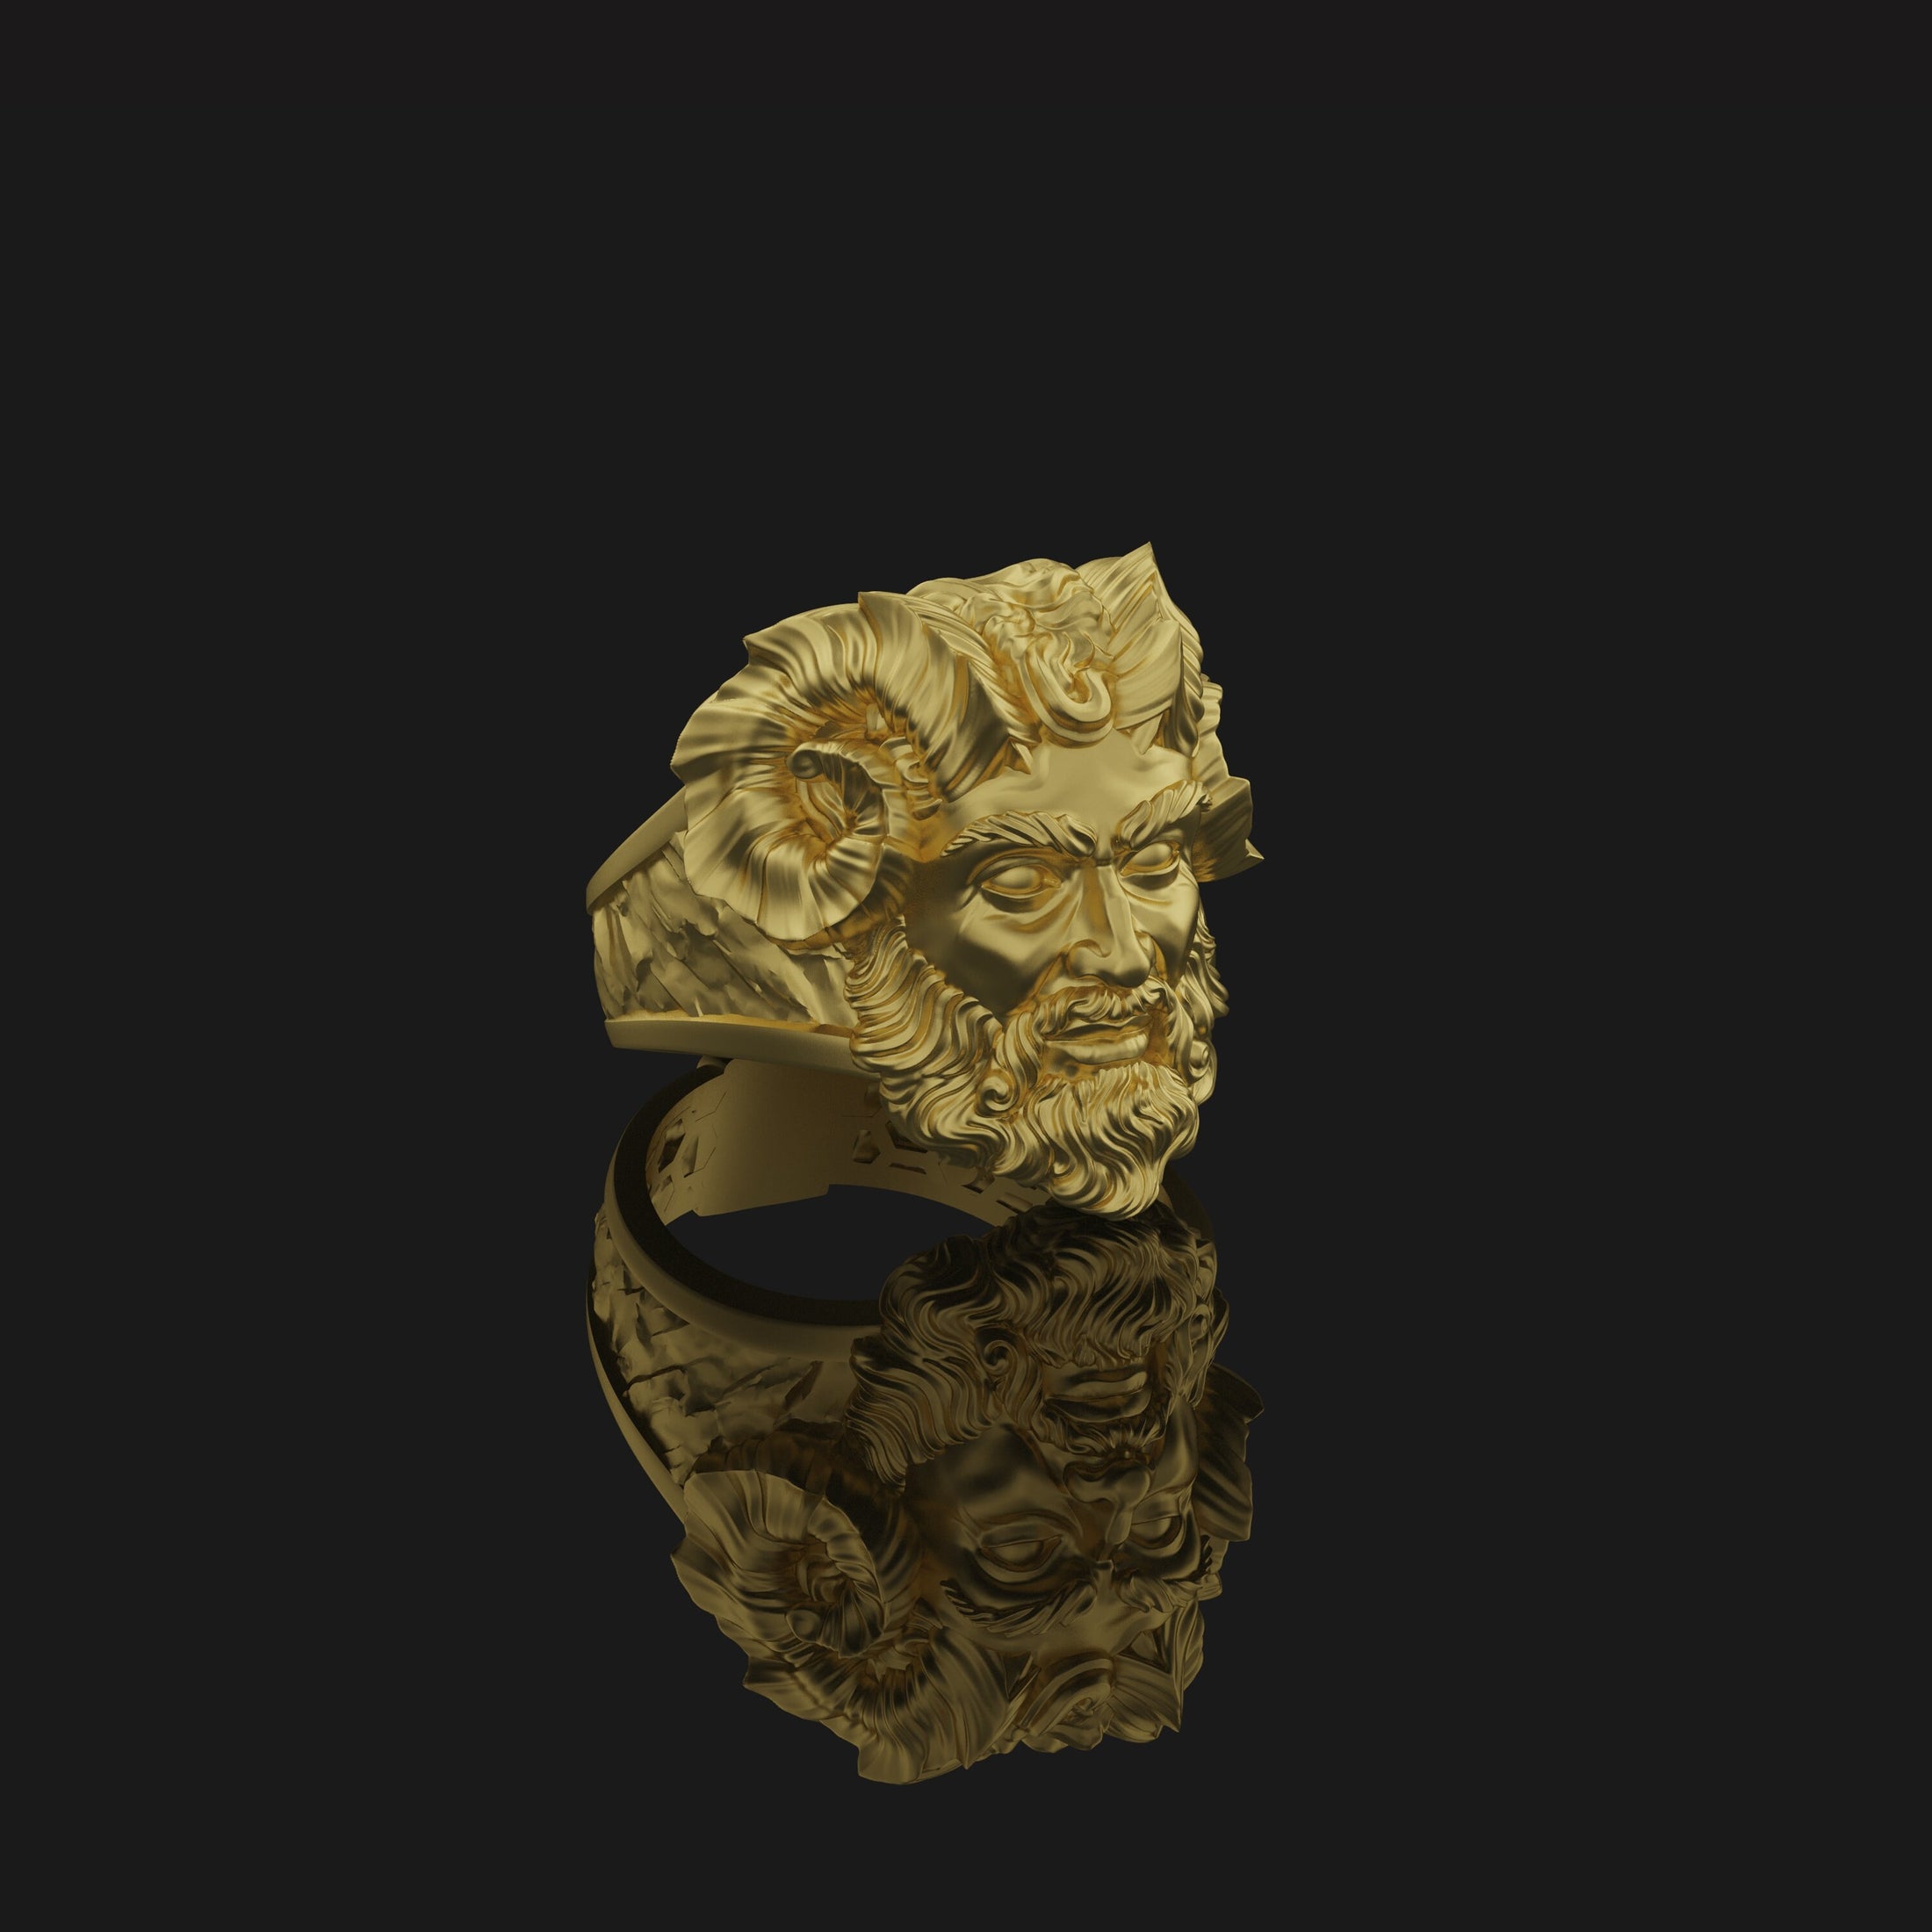 Czernobog Ring - Slavic God of Darkness Jewelry, Mythological Symbol, Unique Pagan Gift, Chernobog Jewelry Gold Finish